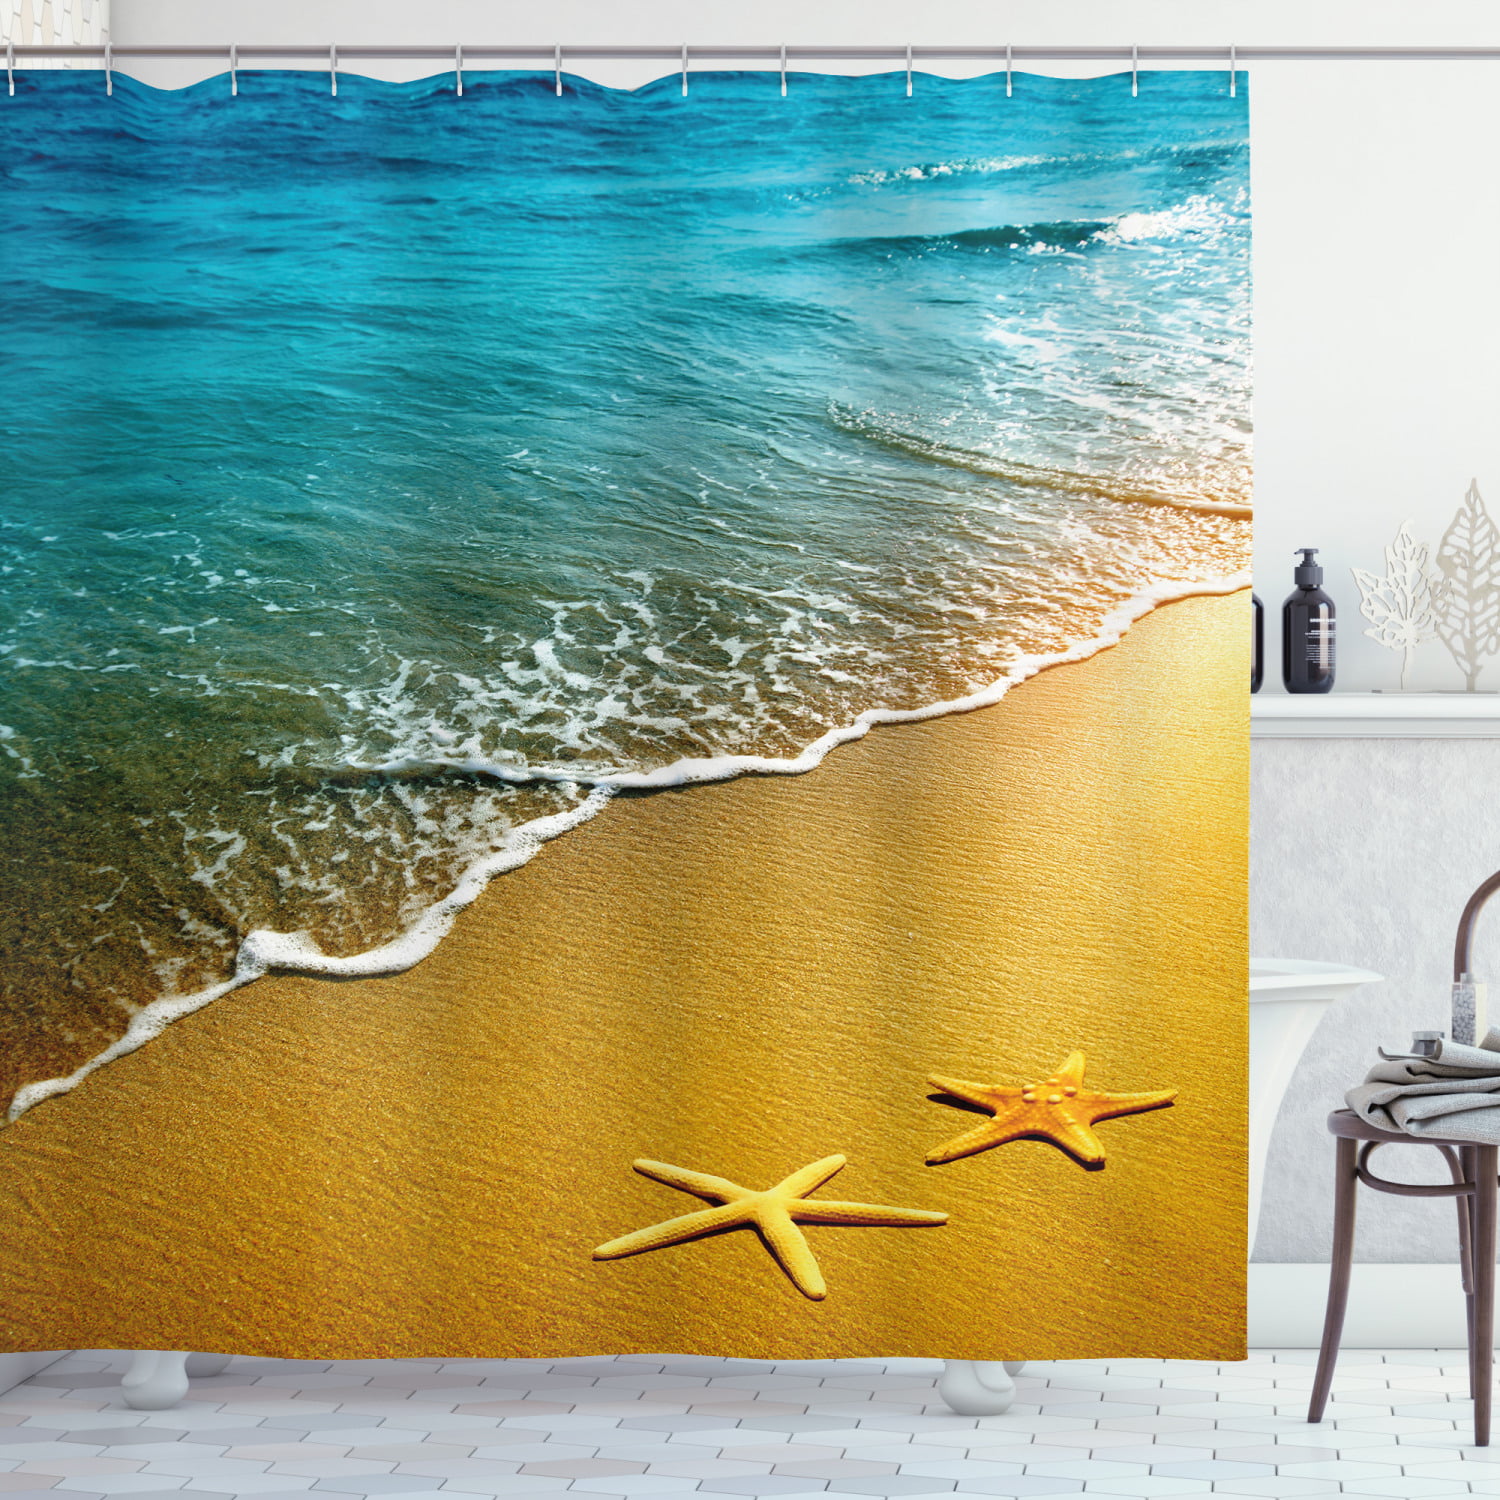 Ocean Waves Beach Scenery Shower Curtain Liner Waterproof Fabric & 12 Hooks 72" 